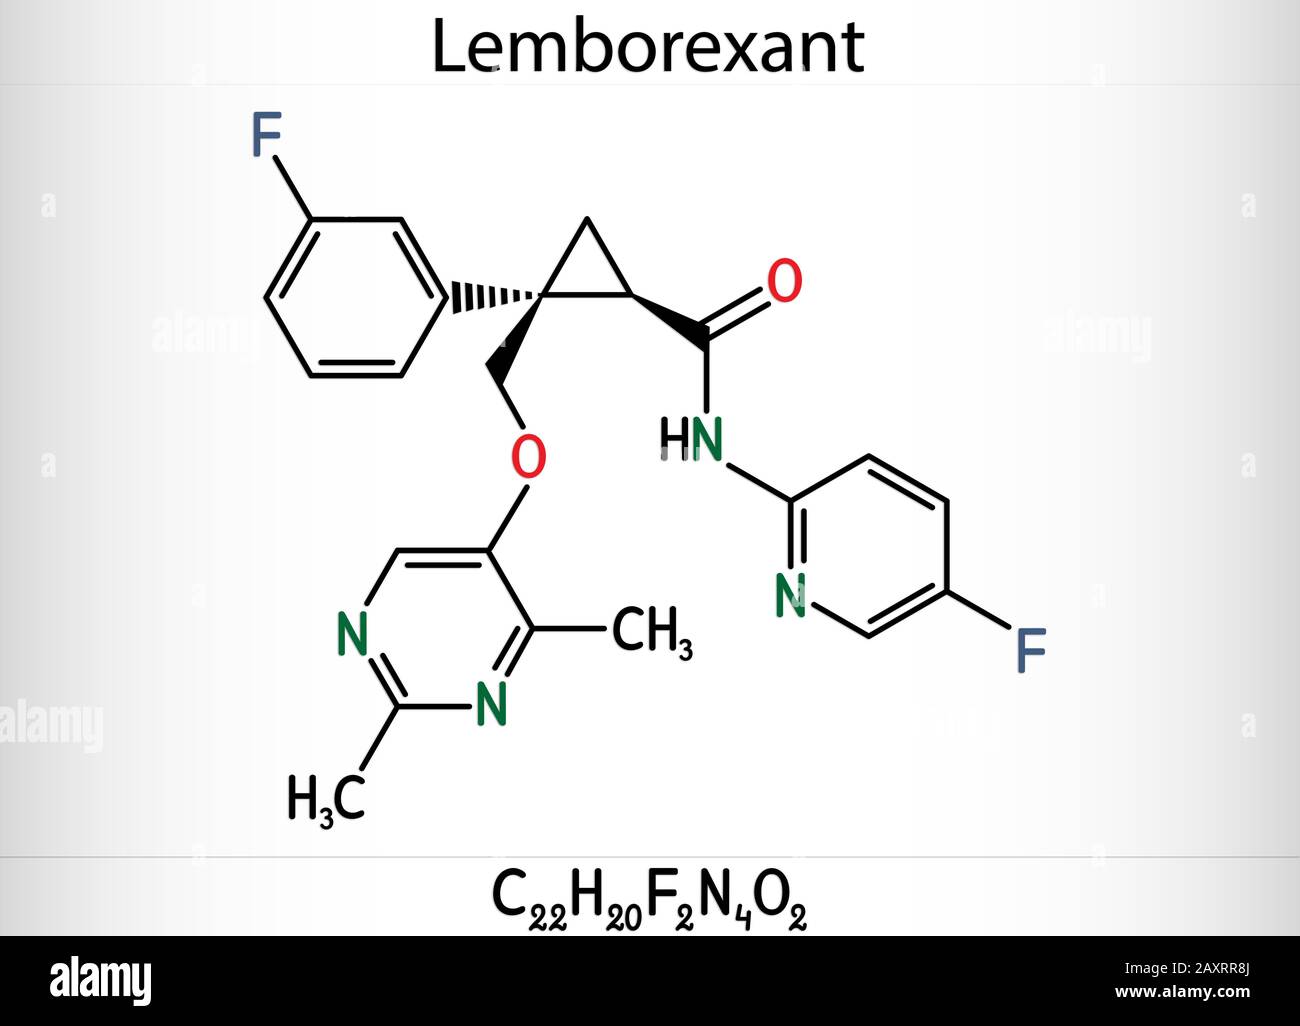 Lemborexant, C22H20F2N4O2-Molekül. Es handelt sich um einen Dual-Orexin-Rezeptor-Antagonisten, der bei der Behandlung von Schlaflosigkeit verwendet wird. Skelettchemische Formel. Abbildung Stockfoto